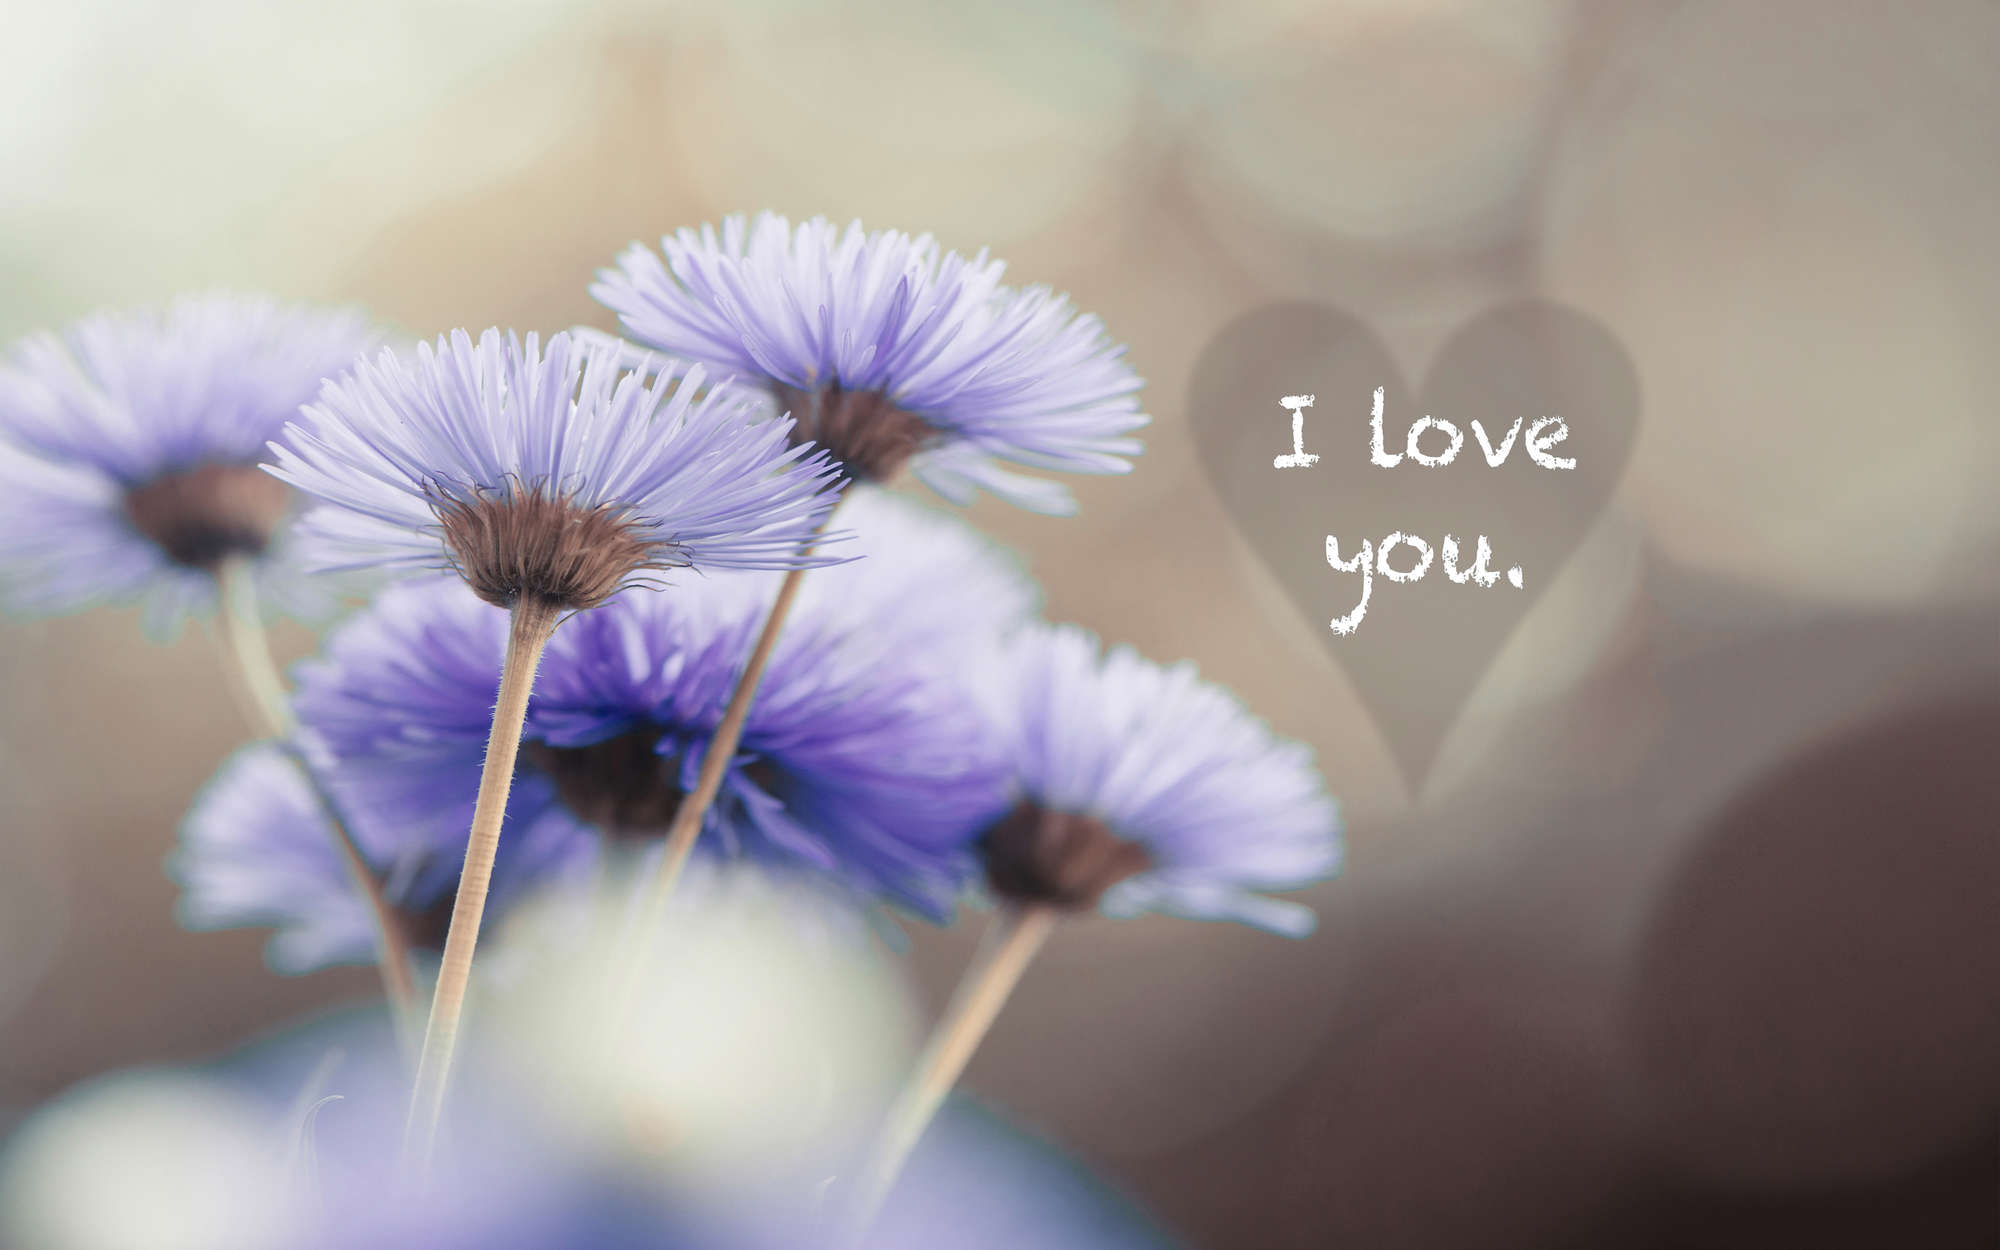             papiers peints à impression numérique Fleurs en violet avec inscription "I love you" - intissé lisse premium
        